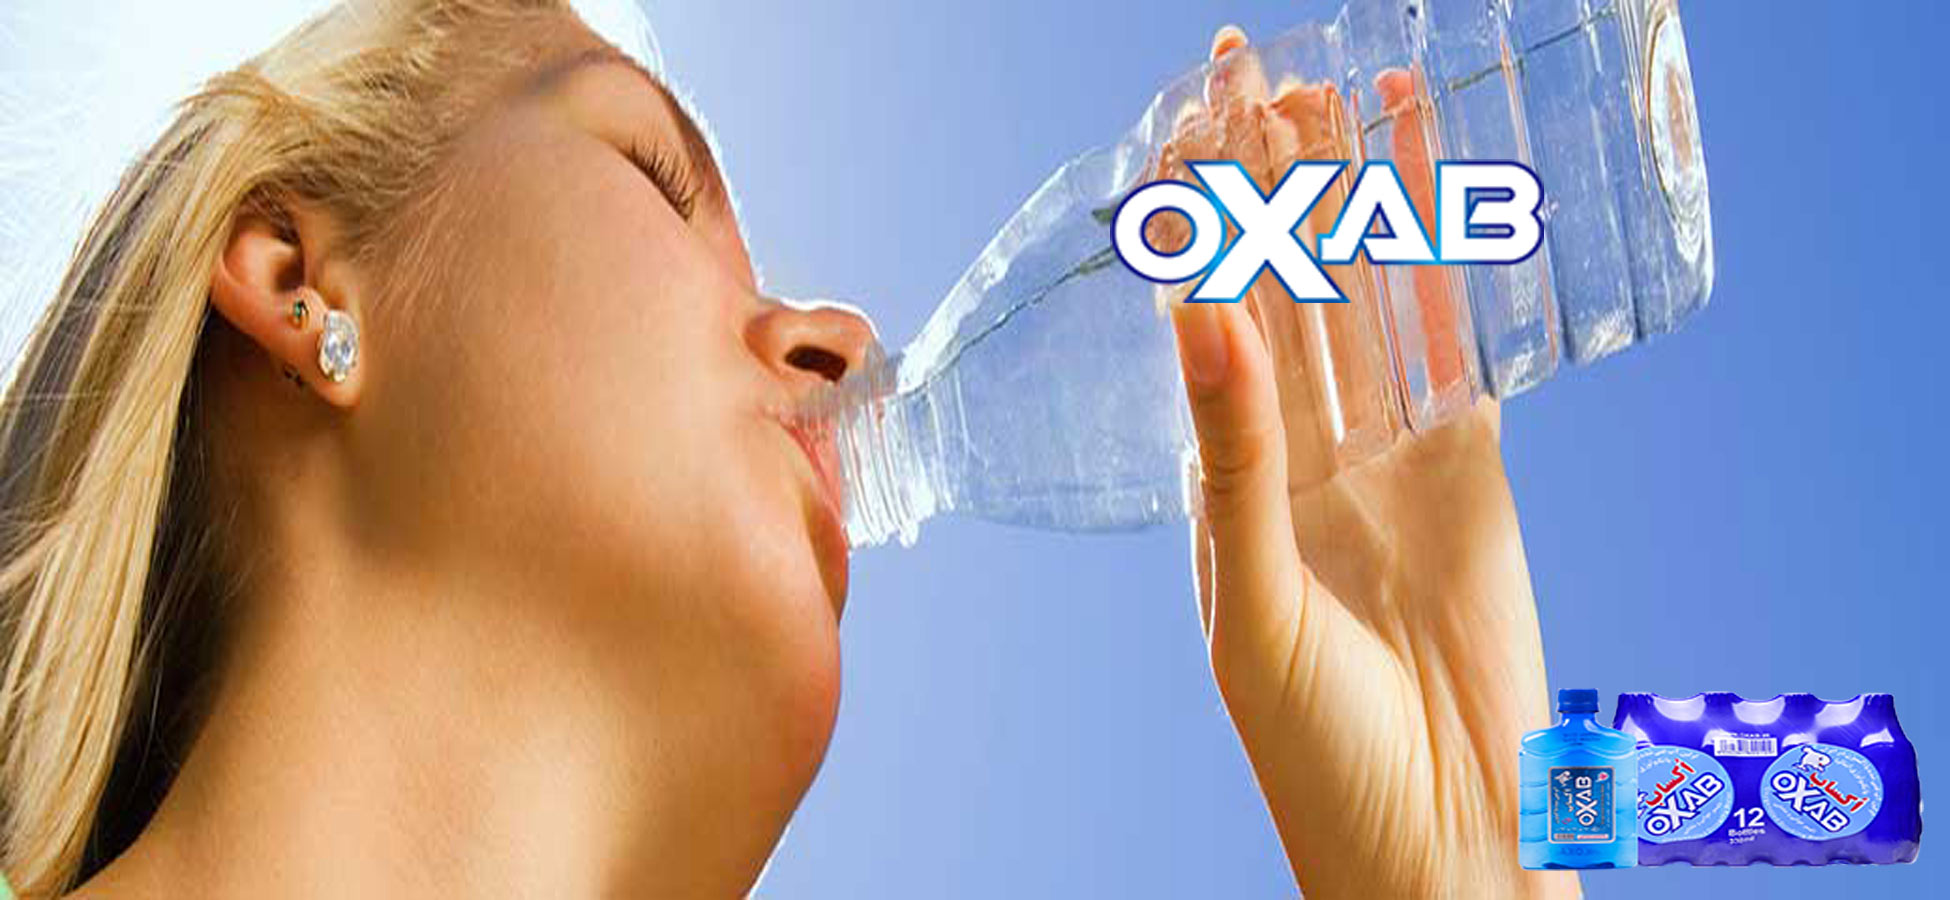 پاکسازی بدن با آب غنی شده با اکسیژن